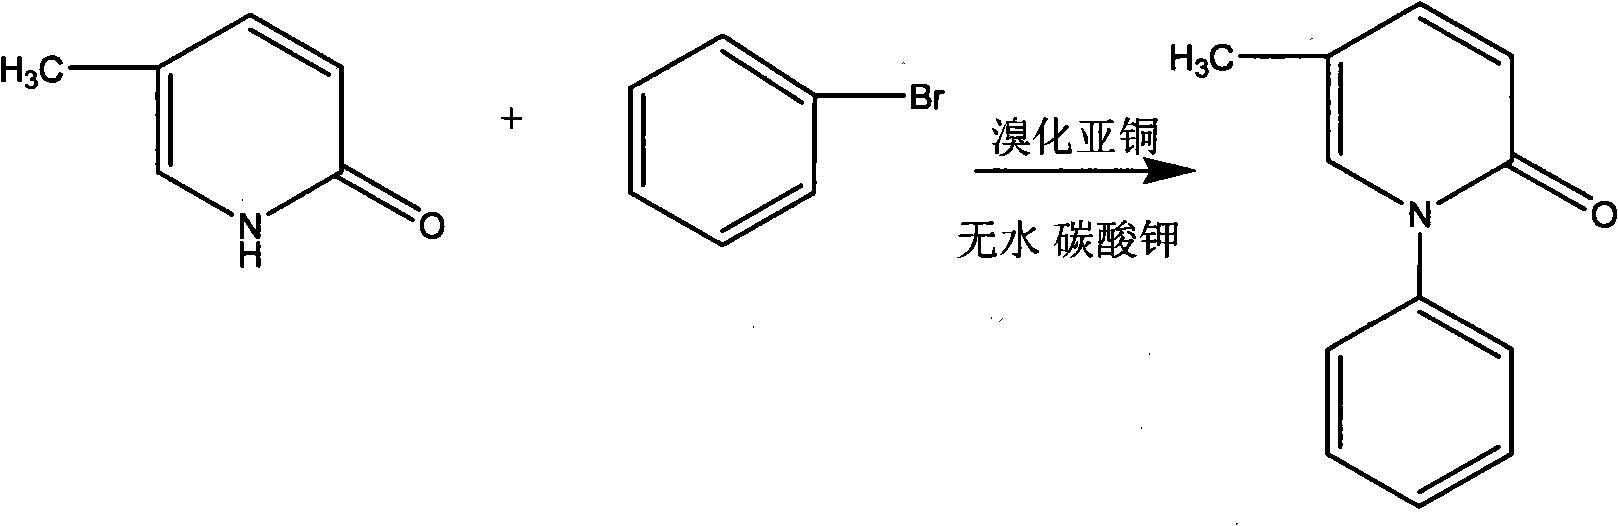 Novel method for preparing 5-methyl-1-phenyl-2-(1H)-pyridone